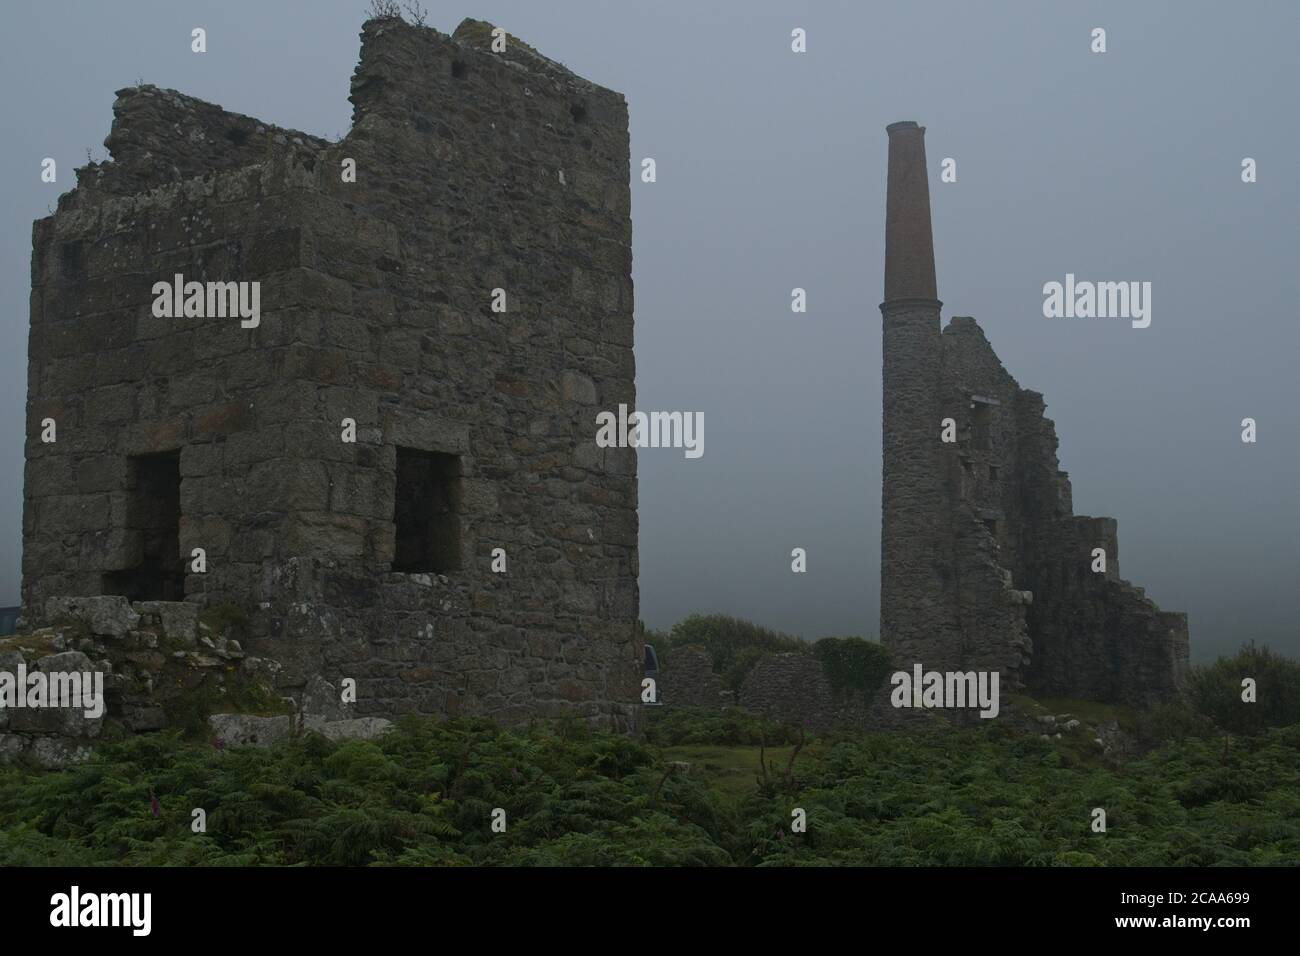 Ruinen der Carn Galver Cornwall Zinnmine im Nebel. Überreste von Minengebäuden und -Anlagen im Mist Landscape-Format Stockfoto